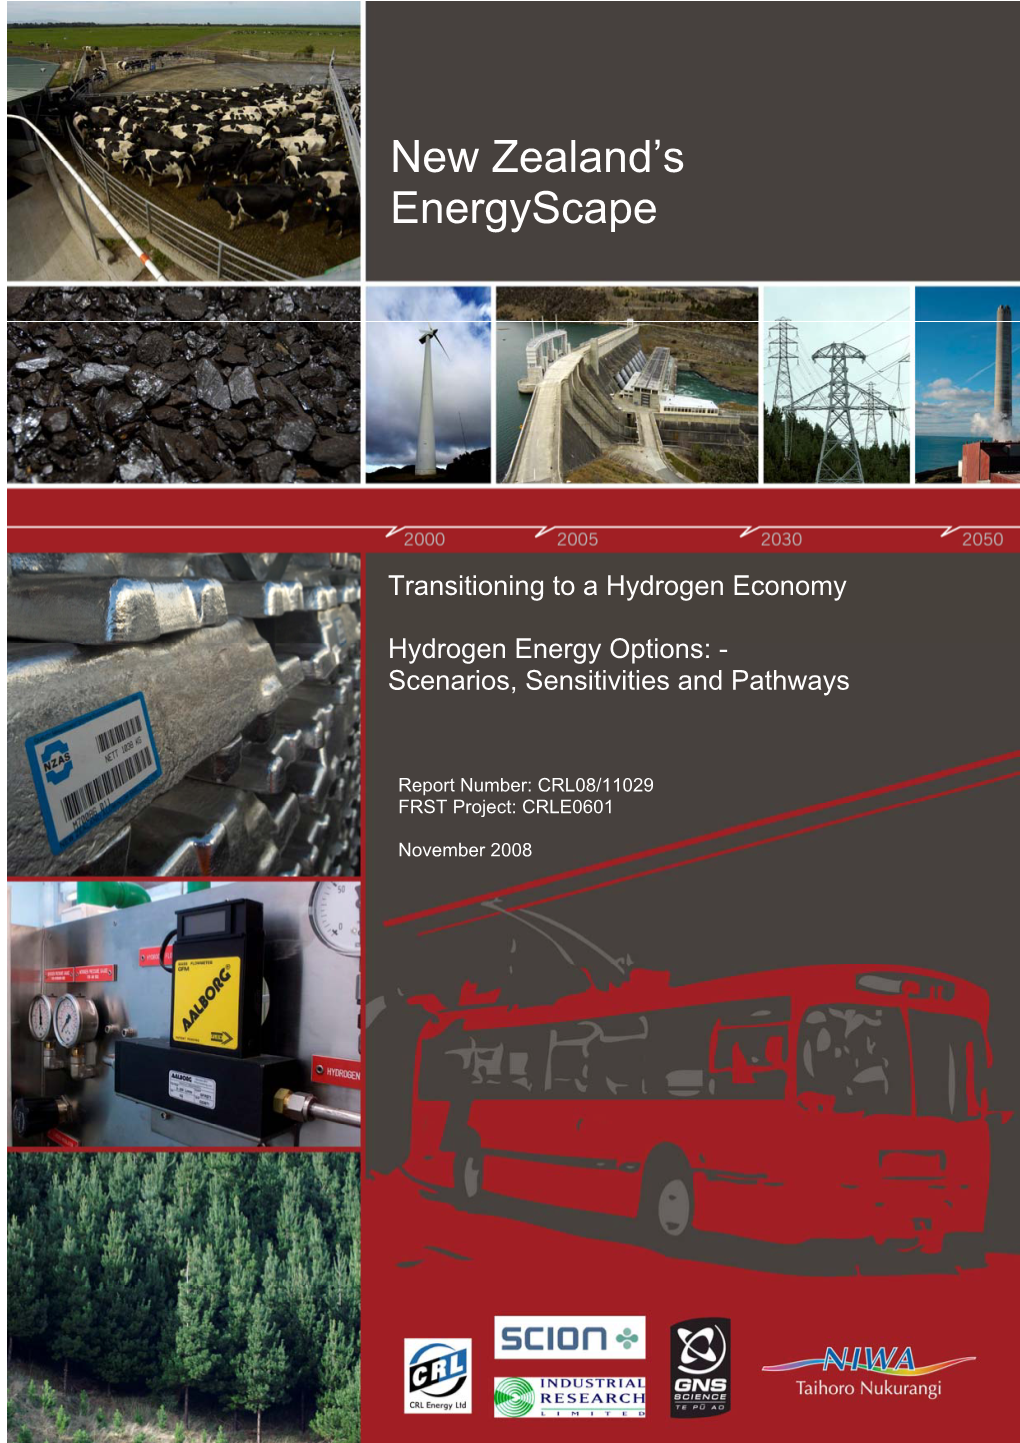 Hydrogen Energy Options: - Scenarios, Sensitivities and Pathways